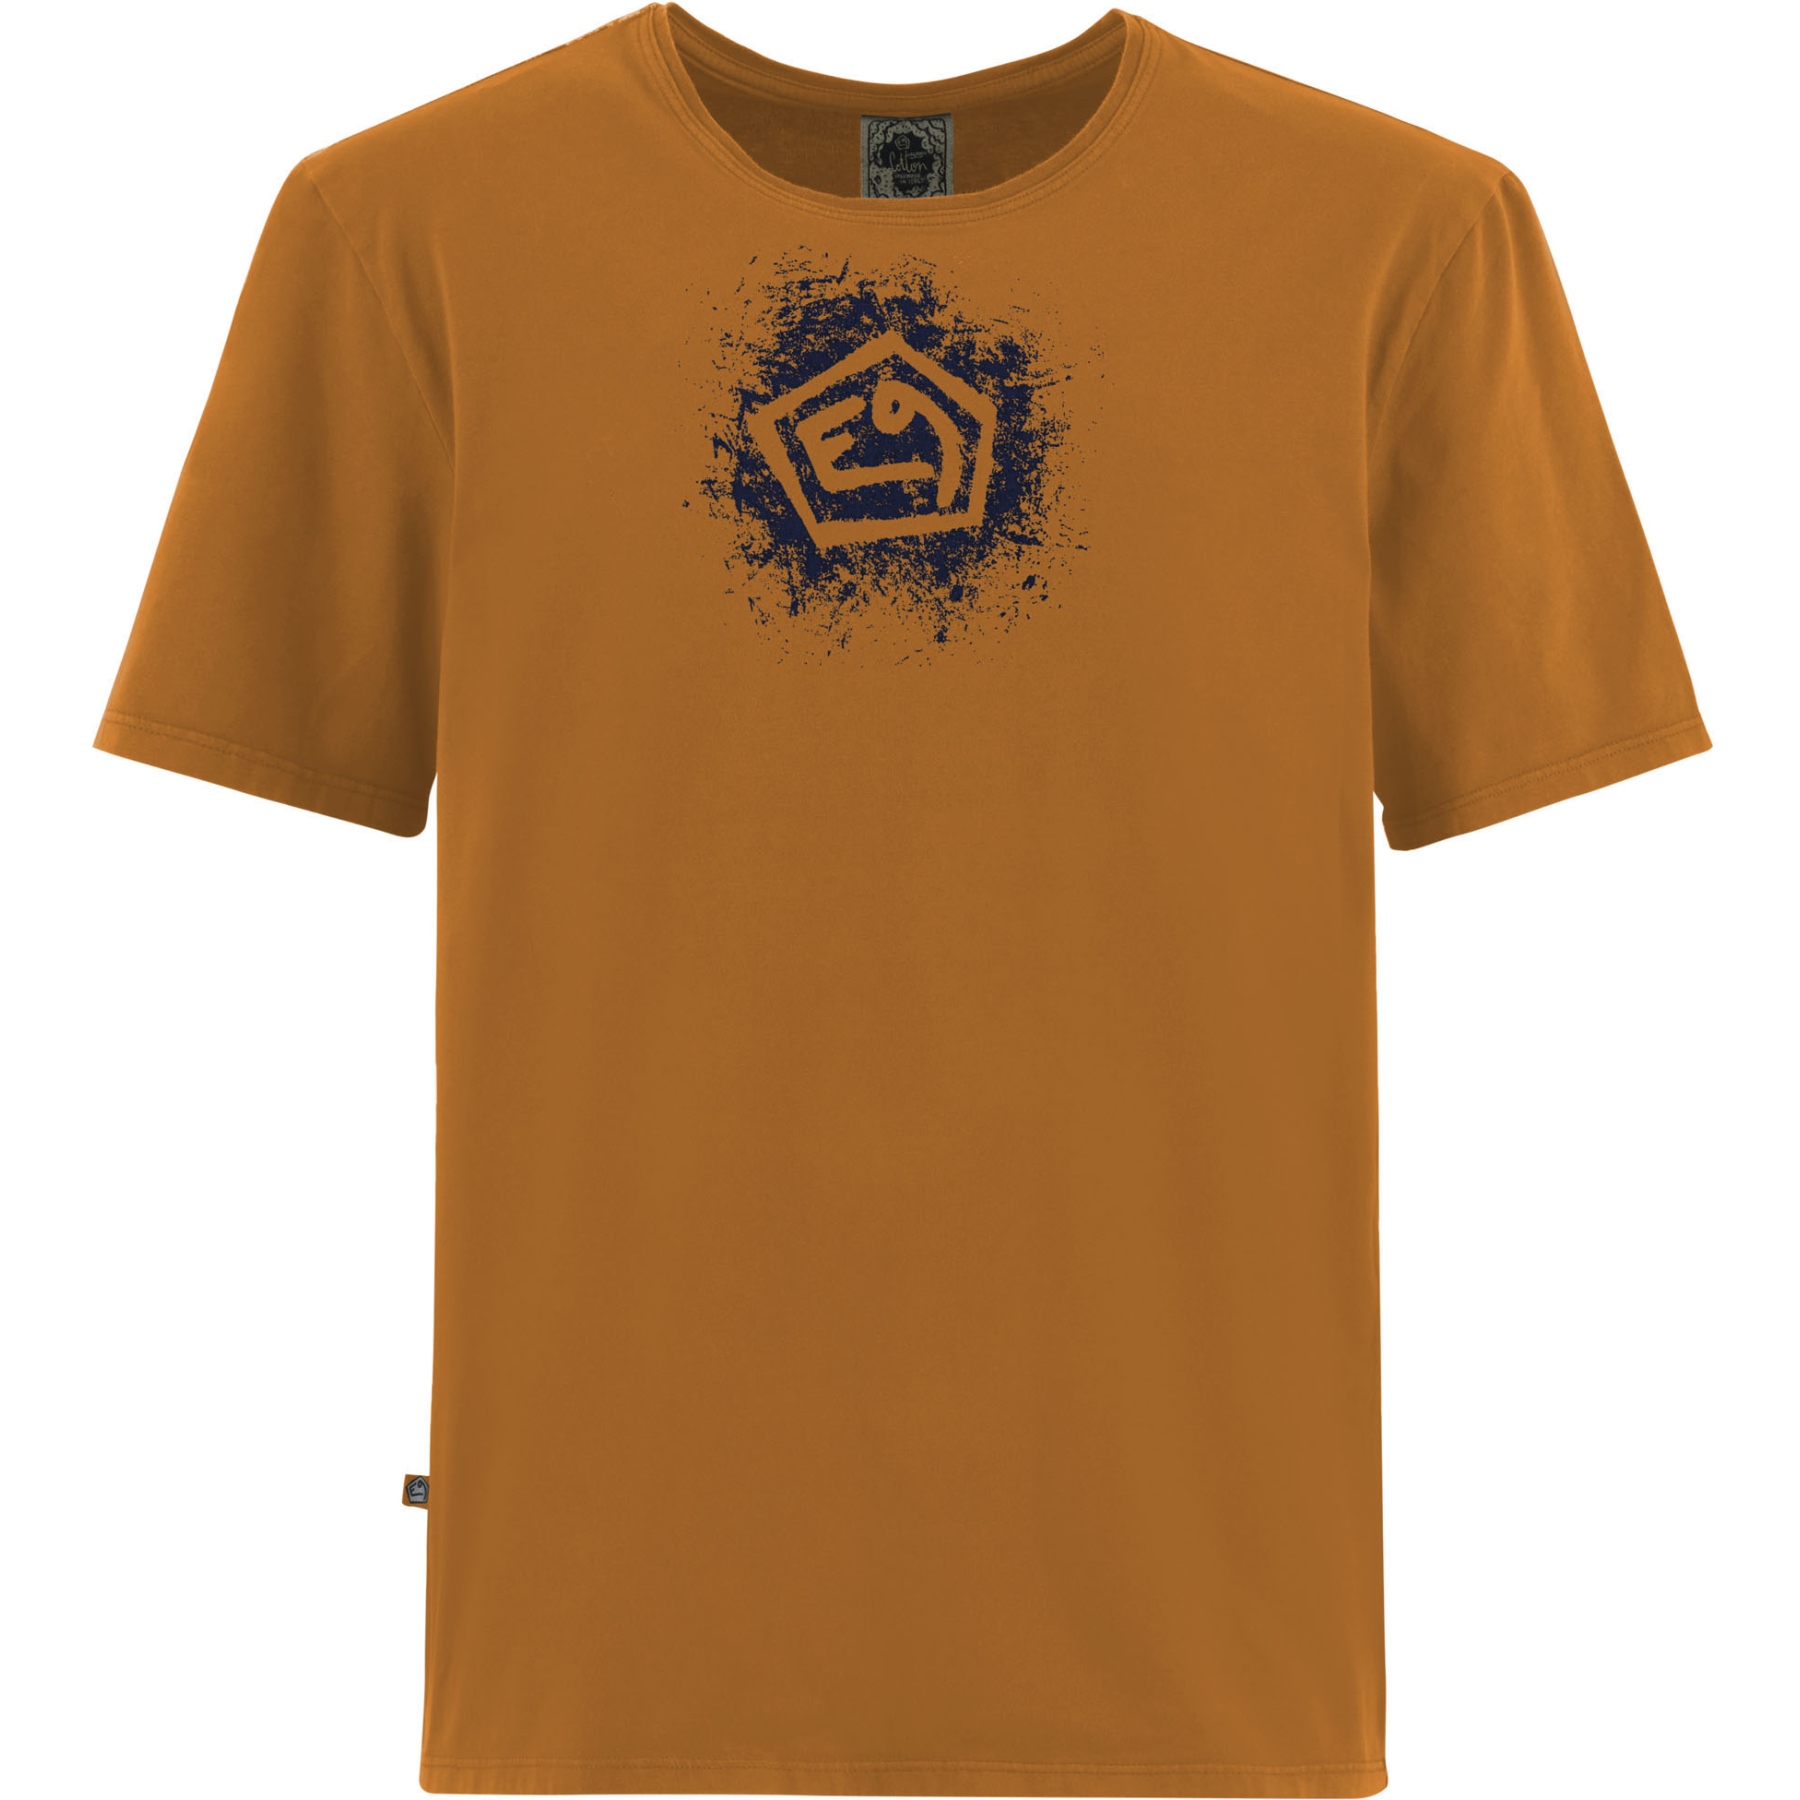 Produktbild von E9 Moveone2.3 T-Shirt Herren - Land